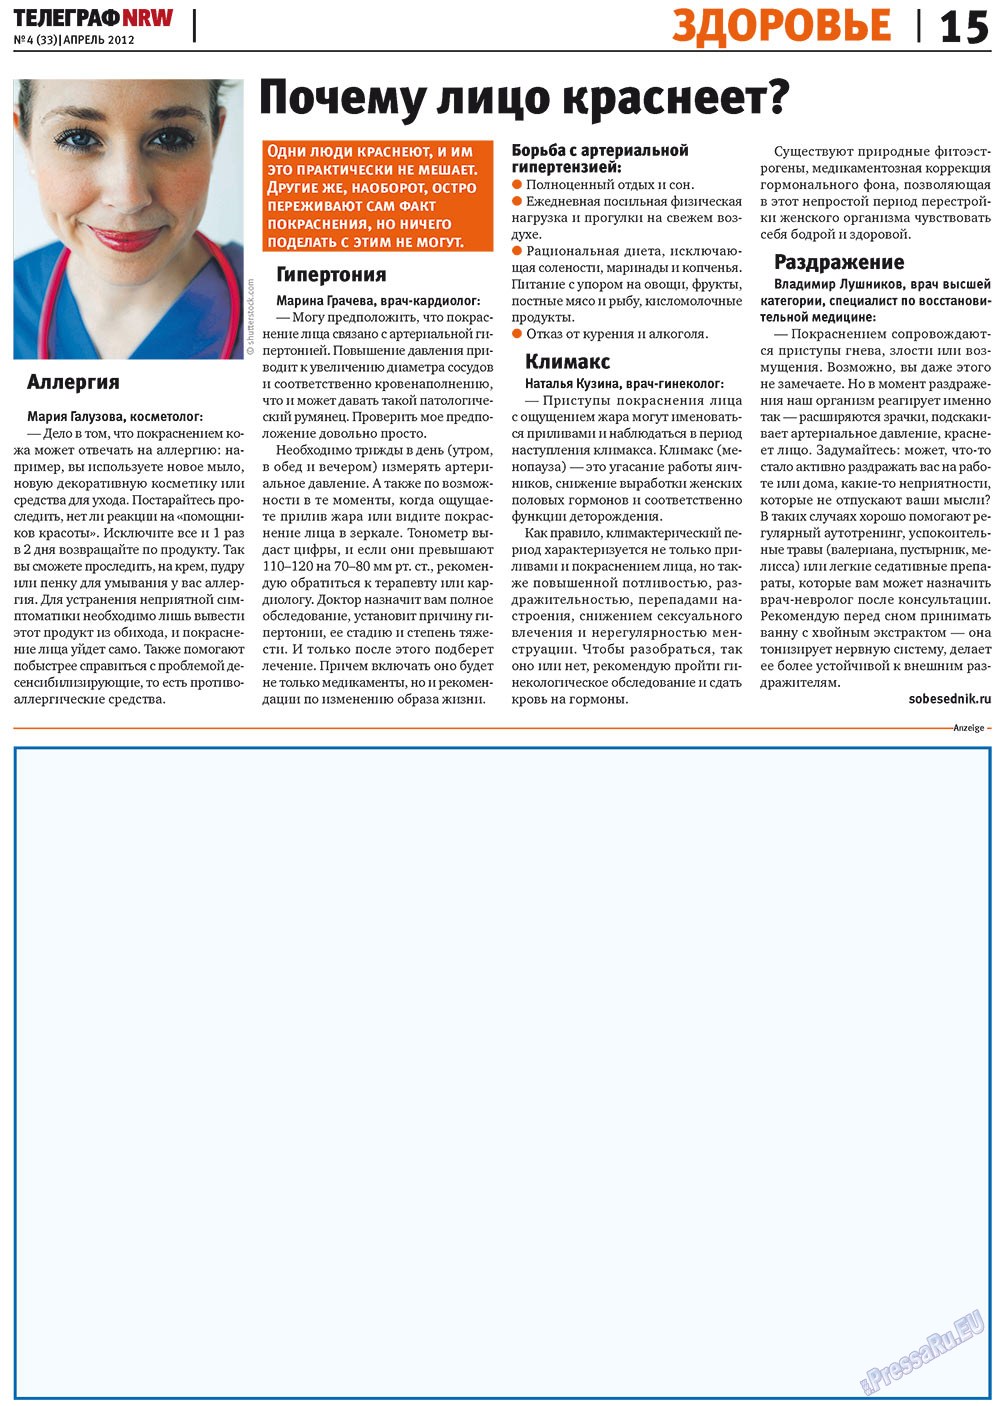 Телеграф NRW (газета). 2012 год, номер 4, стр. 15